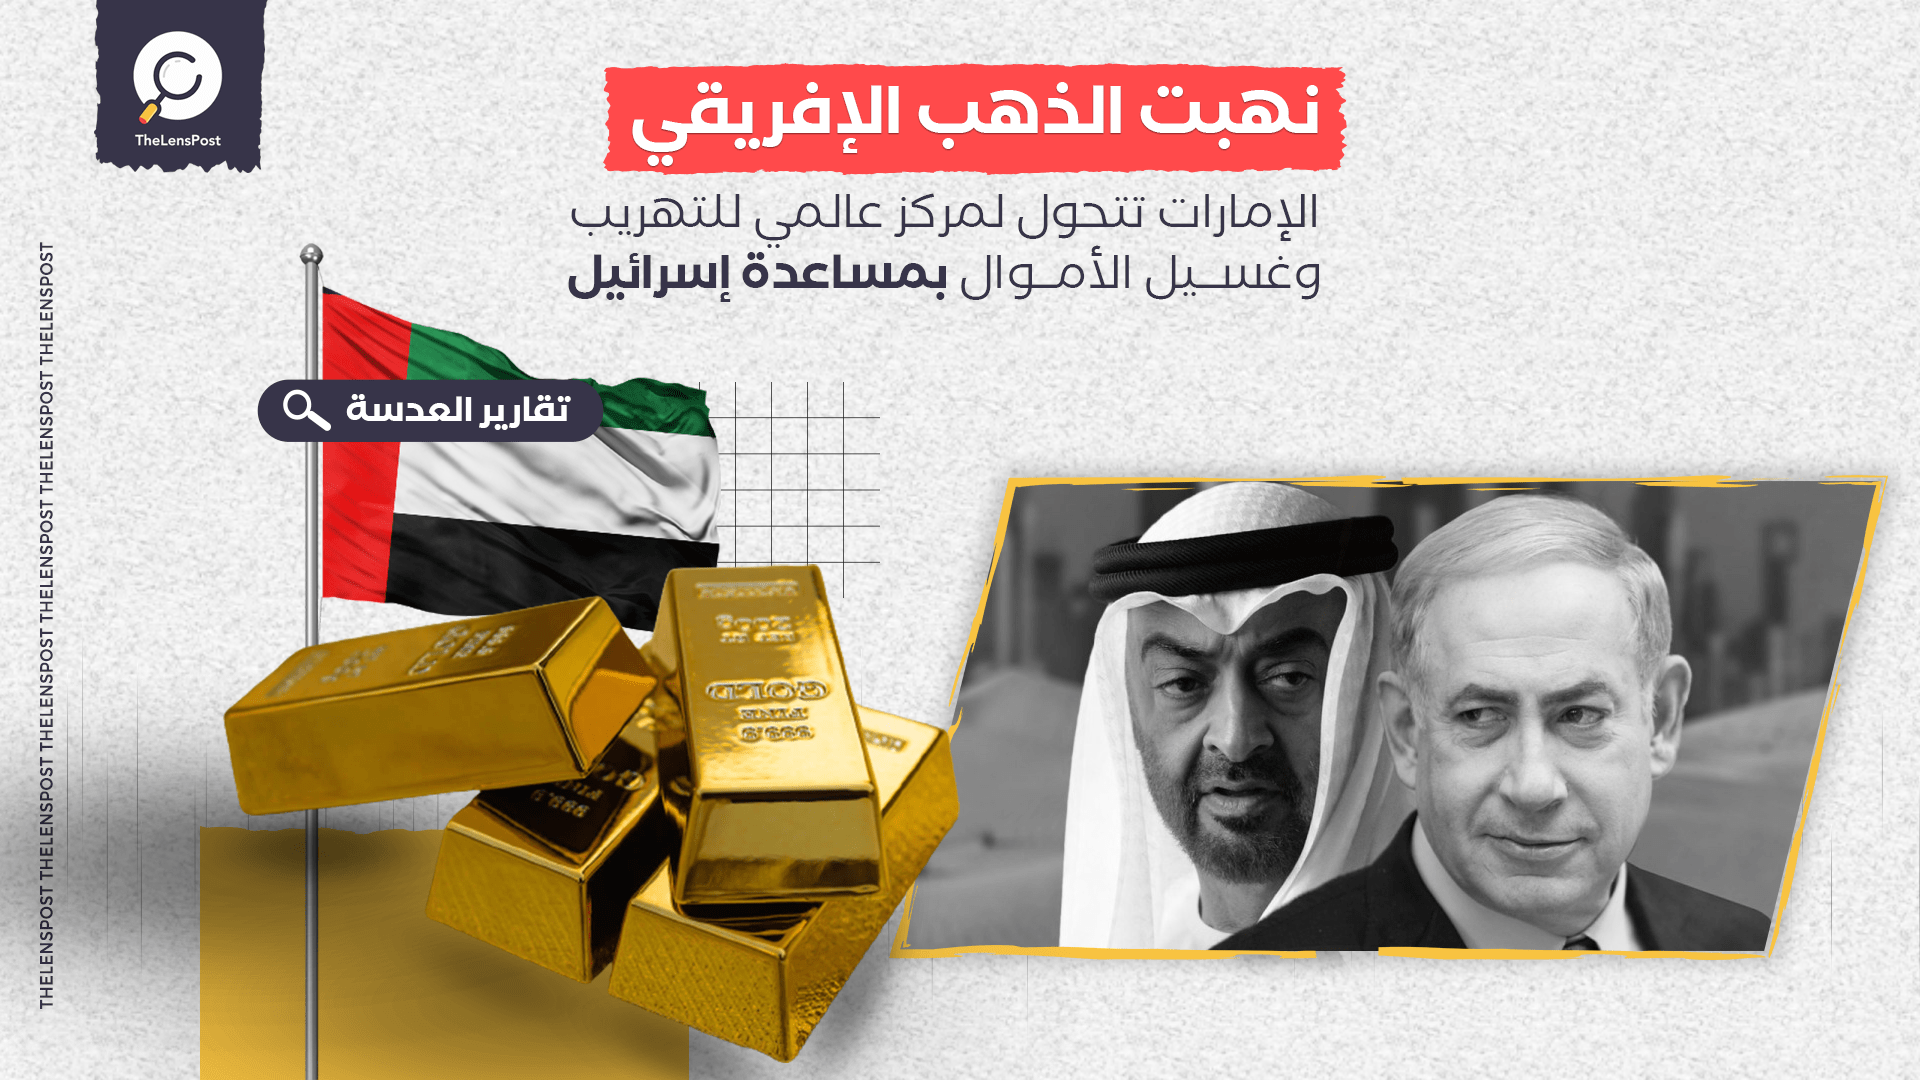 نهبت الذهب الإفريقي.. الإمارات تتحول لمركز عالمي للتهريب وغسيل الأموال بمساعدة إسرائيل